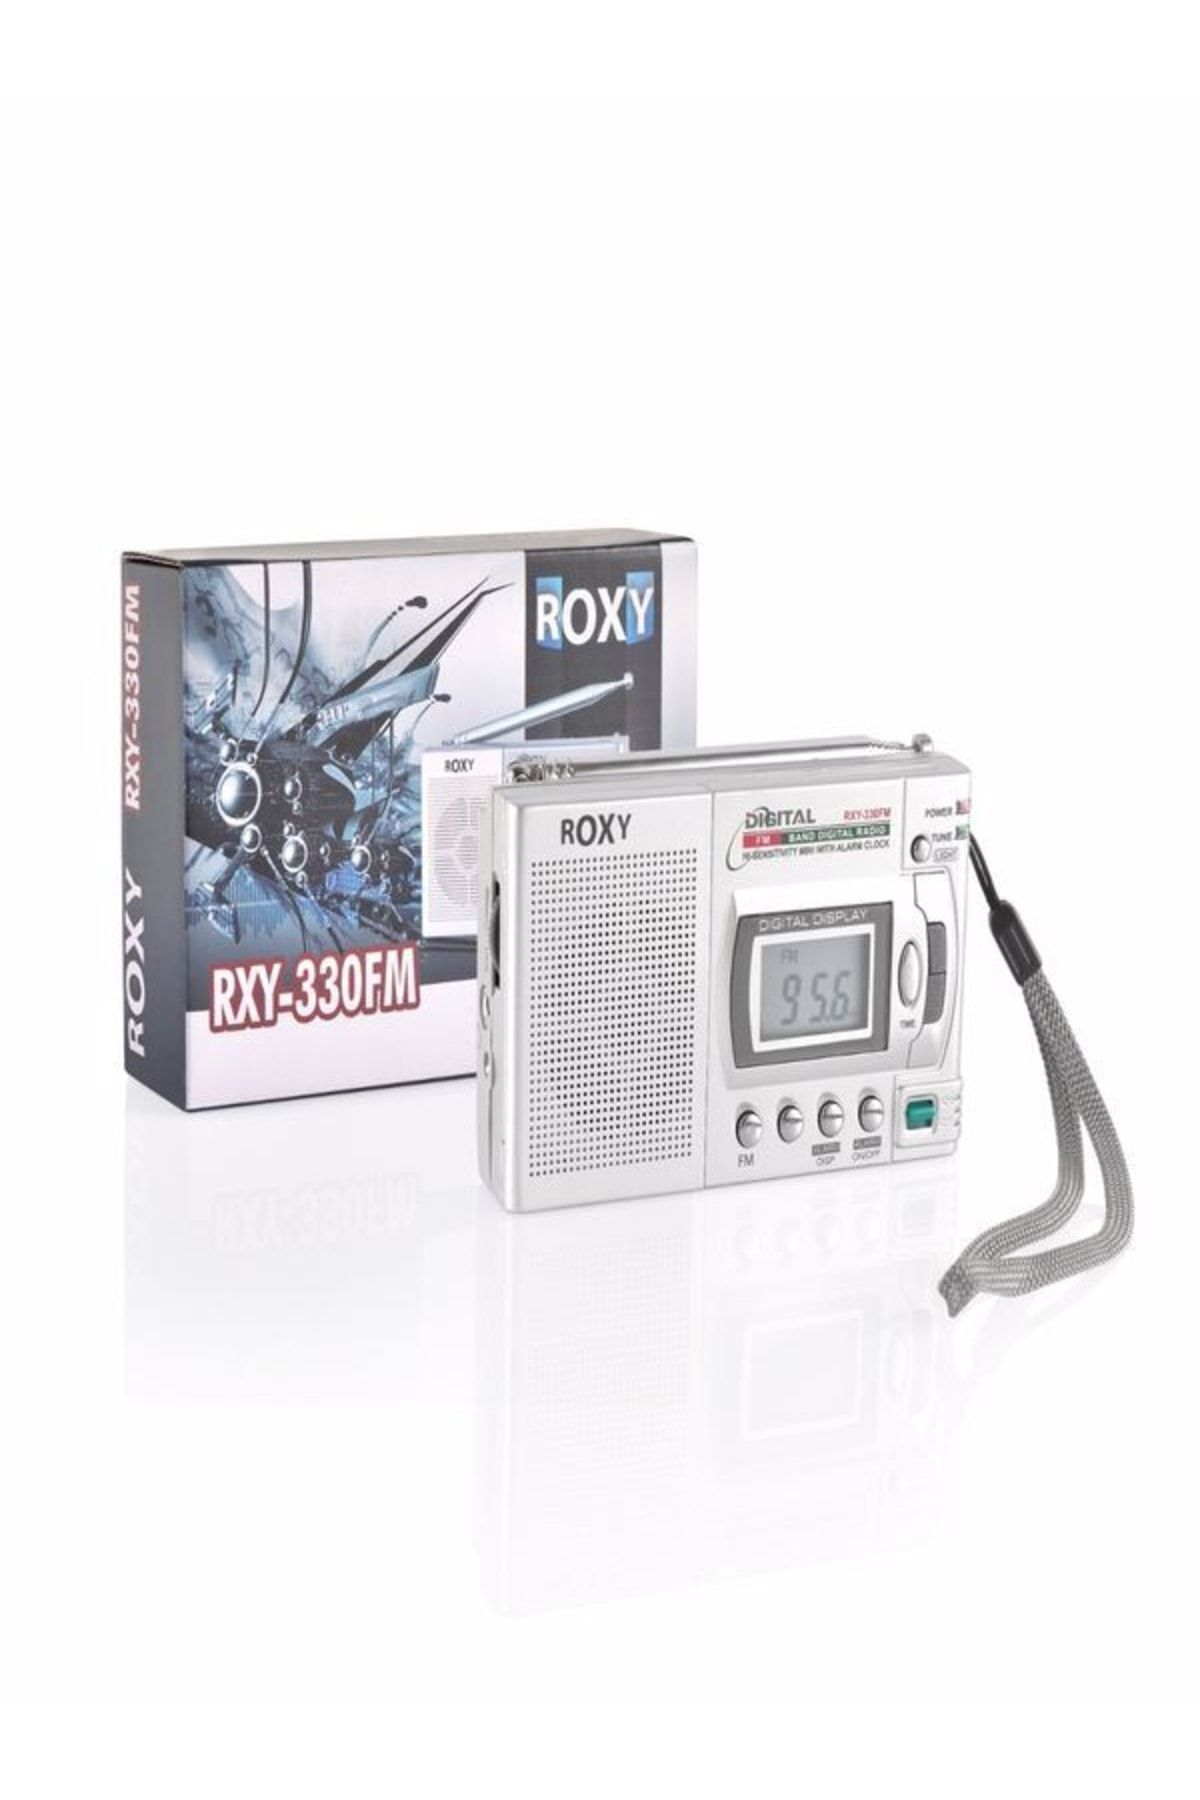 Roxy Rxy-330fm Cep Radyosu - Deprem Çantasına Uygun Taşınabilir Radyo